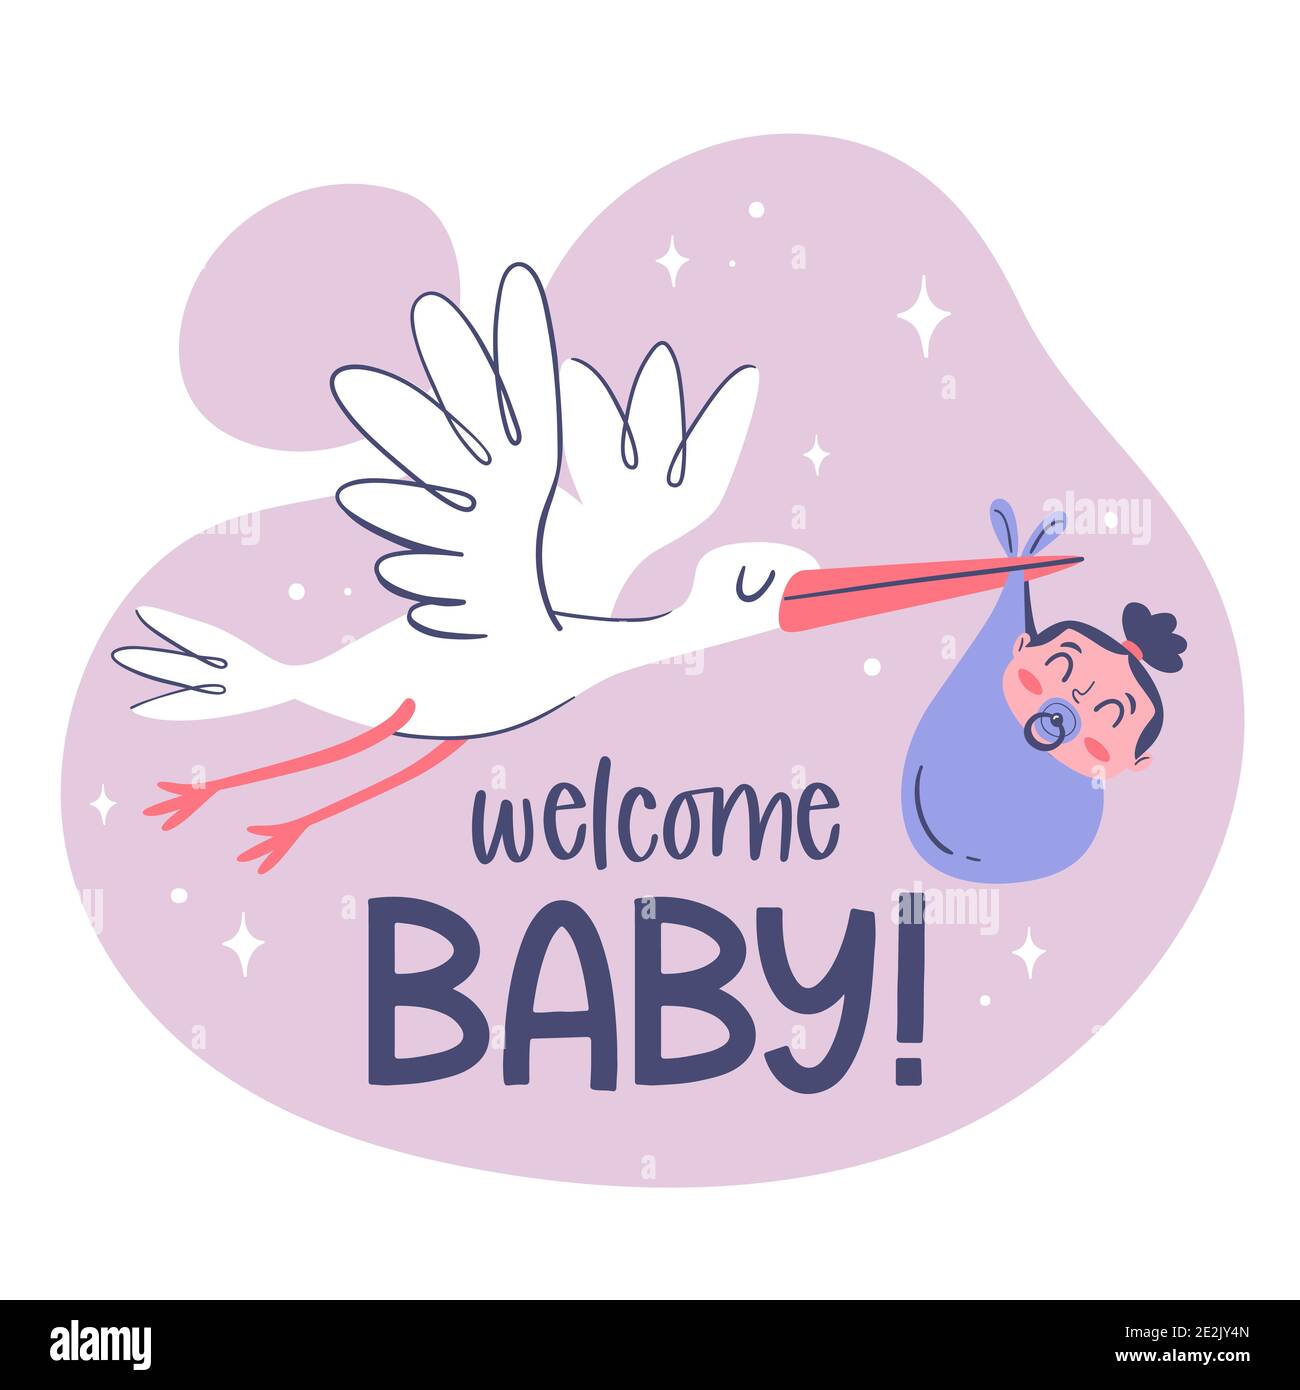 Niedliche Baby-Karte Vorlage mit einem handgezeichneten Storch hält ein Baby  Mädchen Stock-Vektorgrafik - Alamy